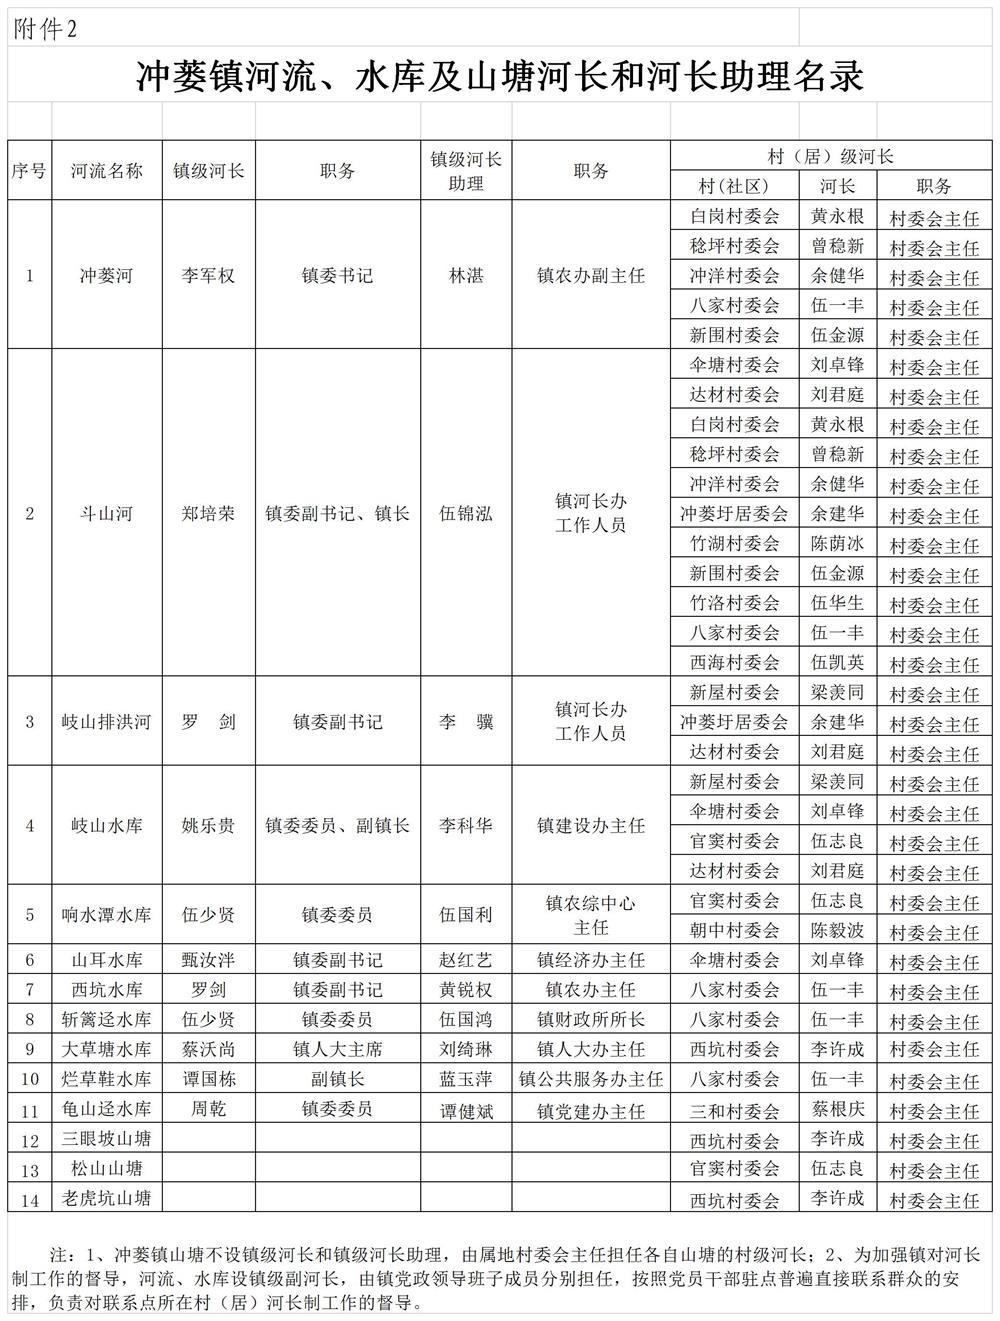 冲委〔2020〕87号   附件1冲蒌镇河流水库河长、河长助理名录 (1).jpg